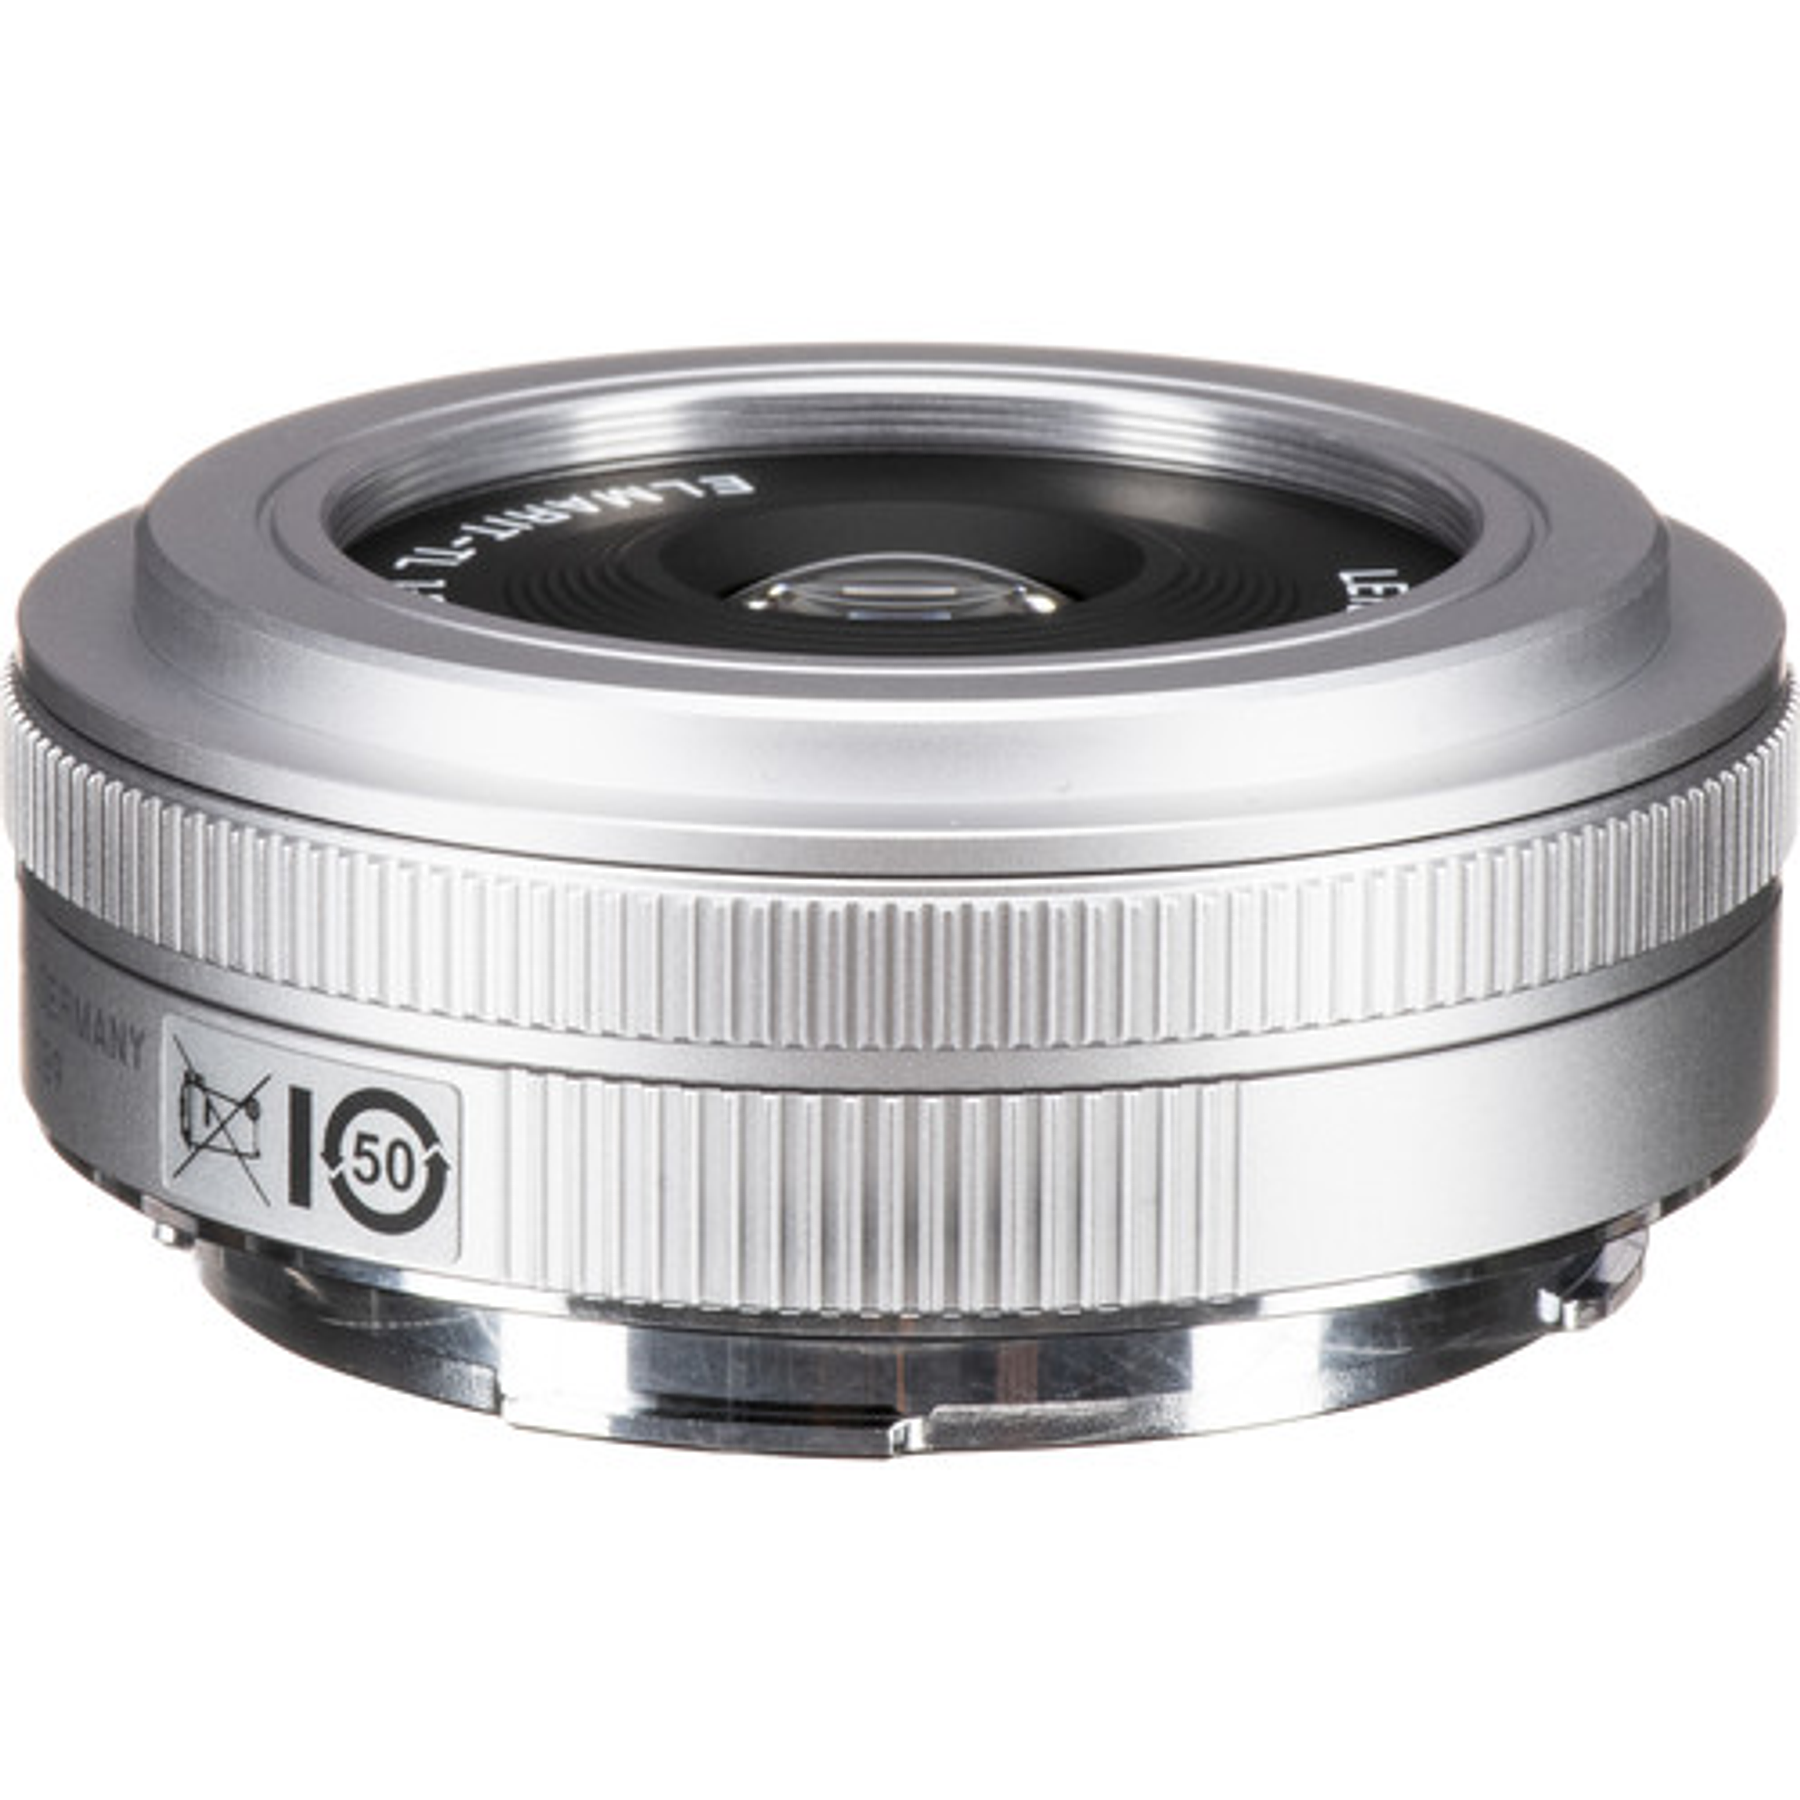 Leica Elmarit-TL 18 mm f/2.8 ASPH. (silver)